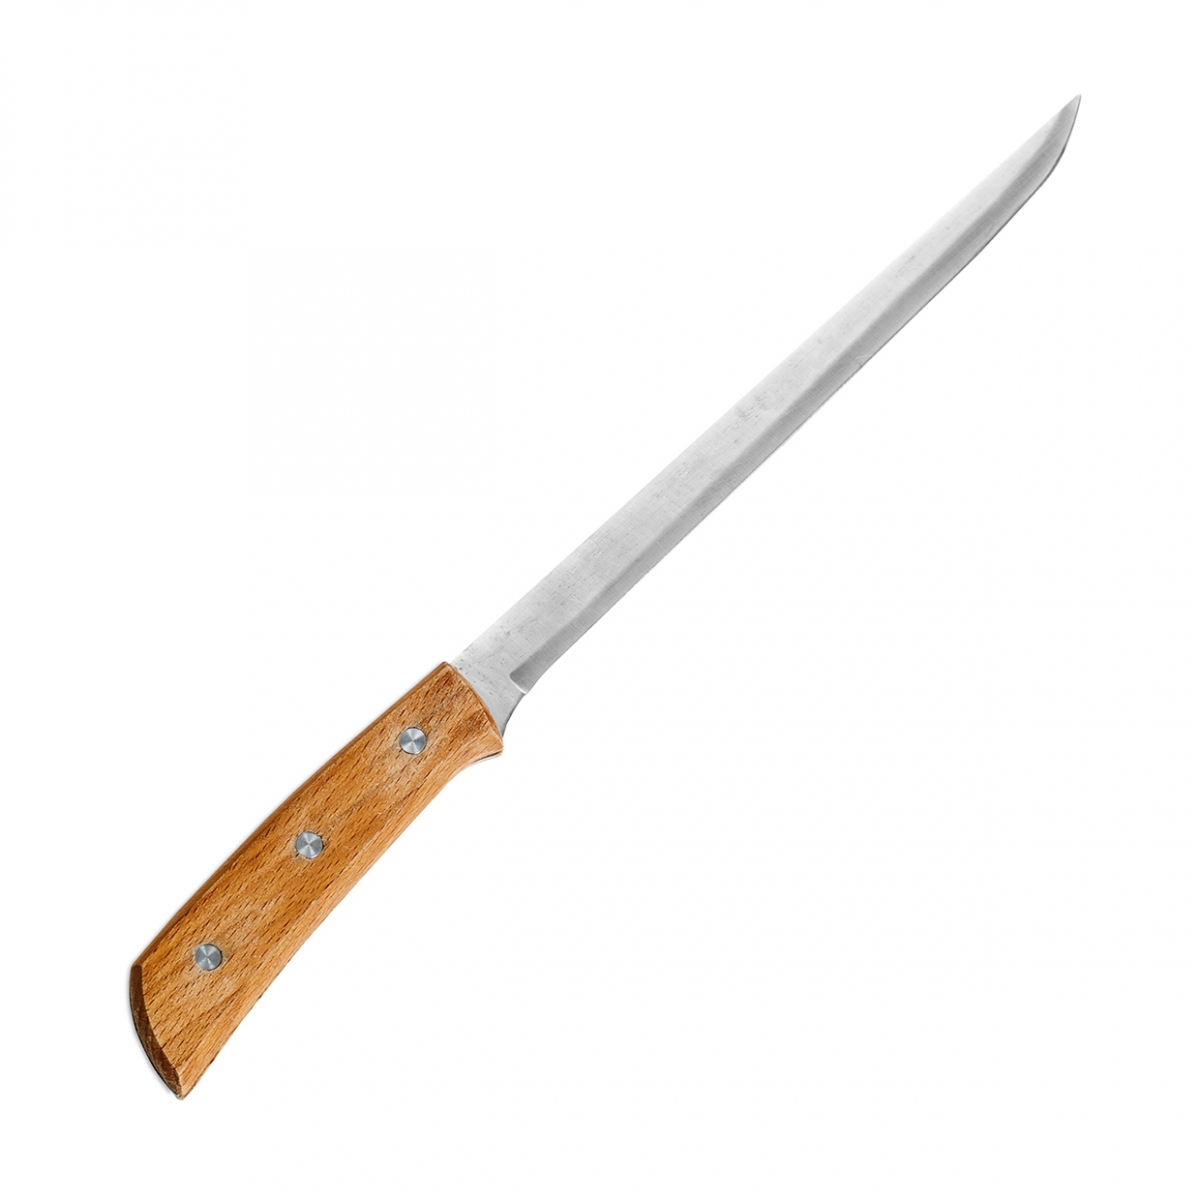 Imagen en la que se ve un cuchillo jamonero